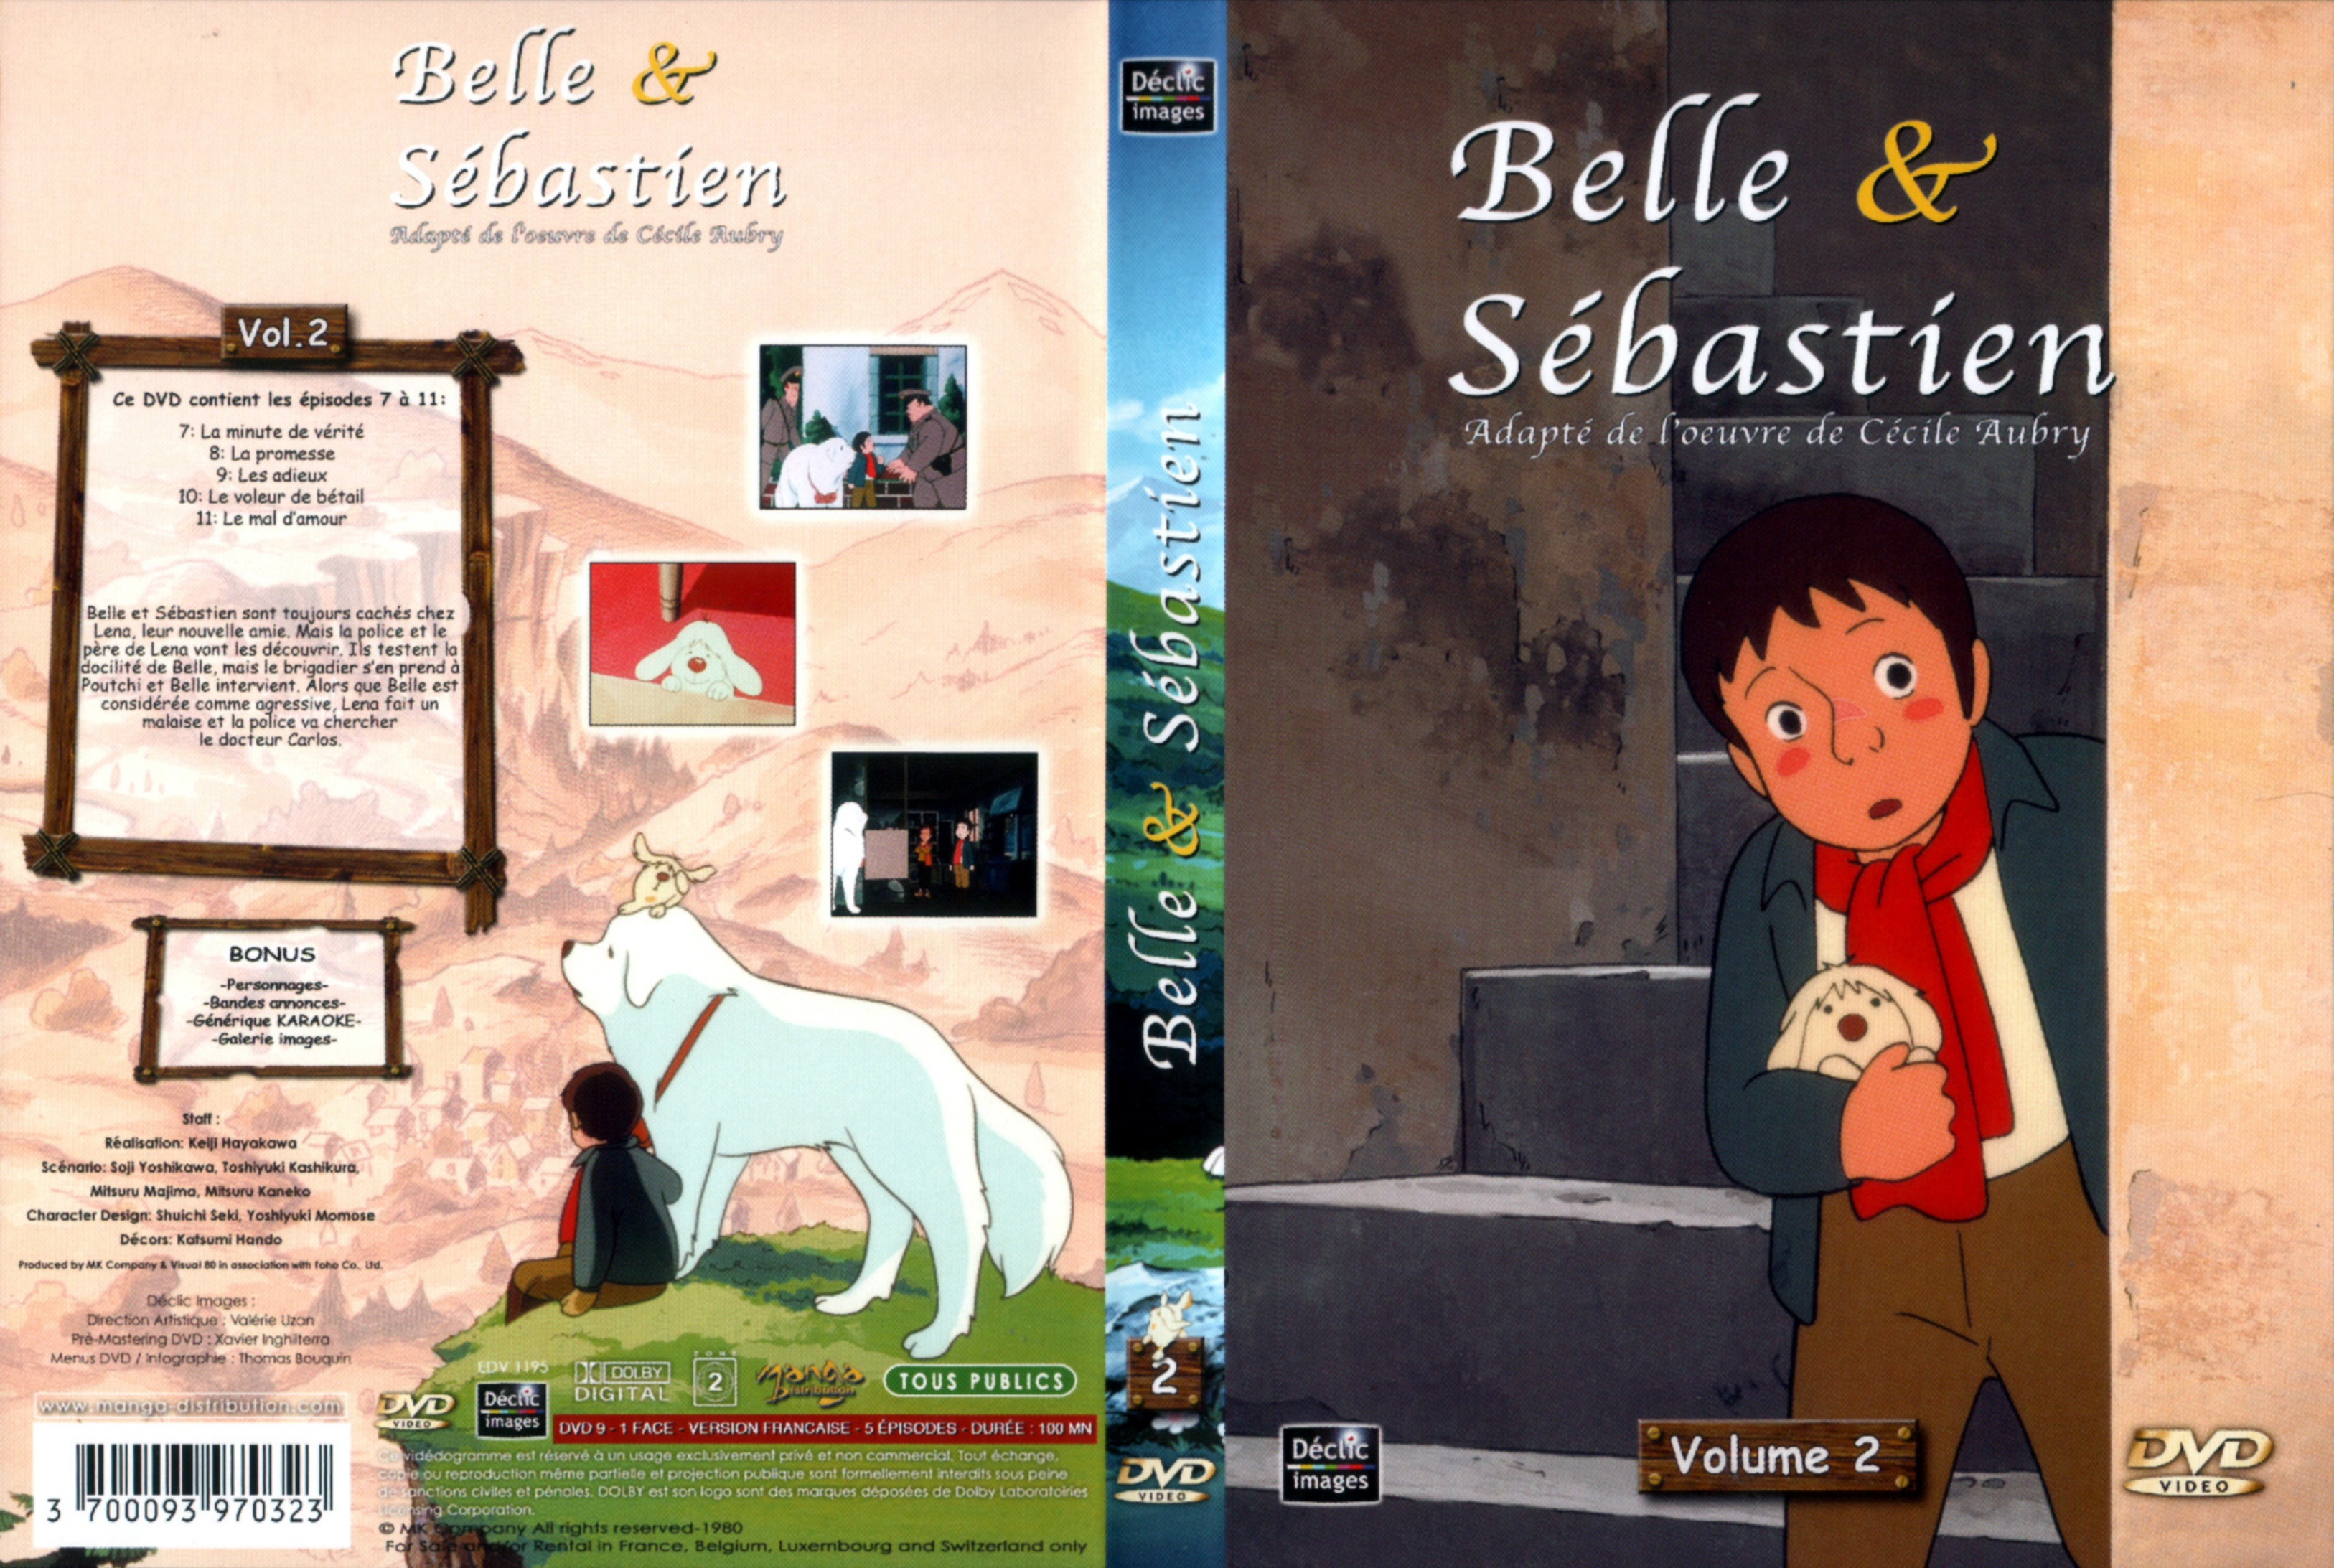 Jaquette DVD Belle et Sebastien DVD 02